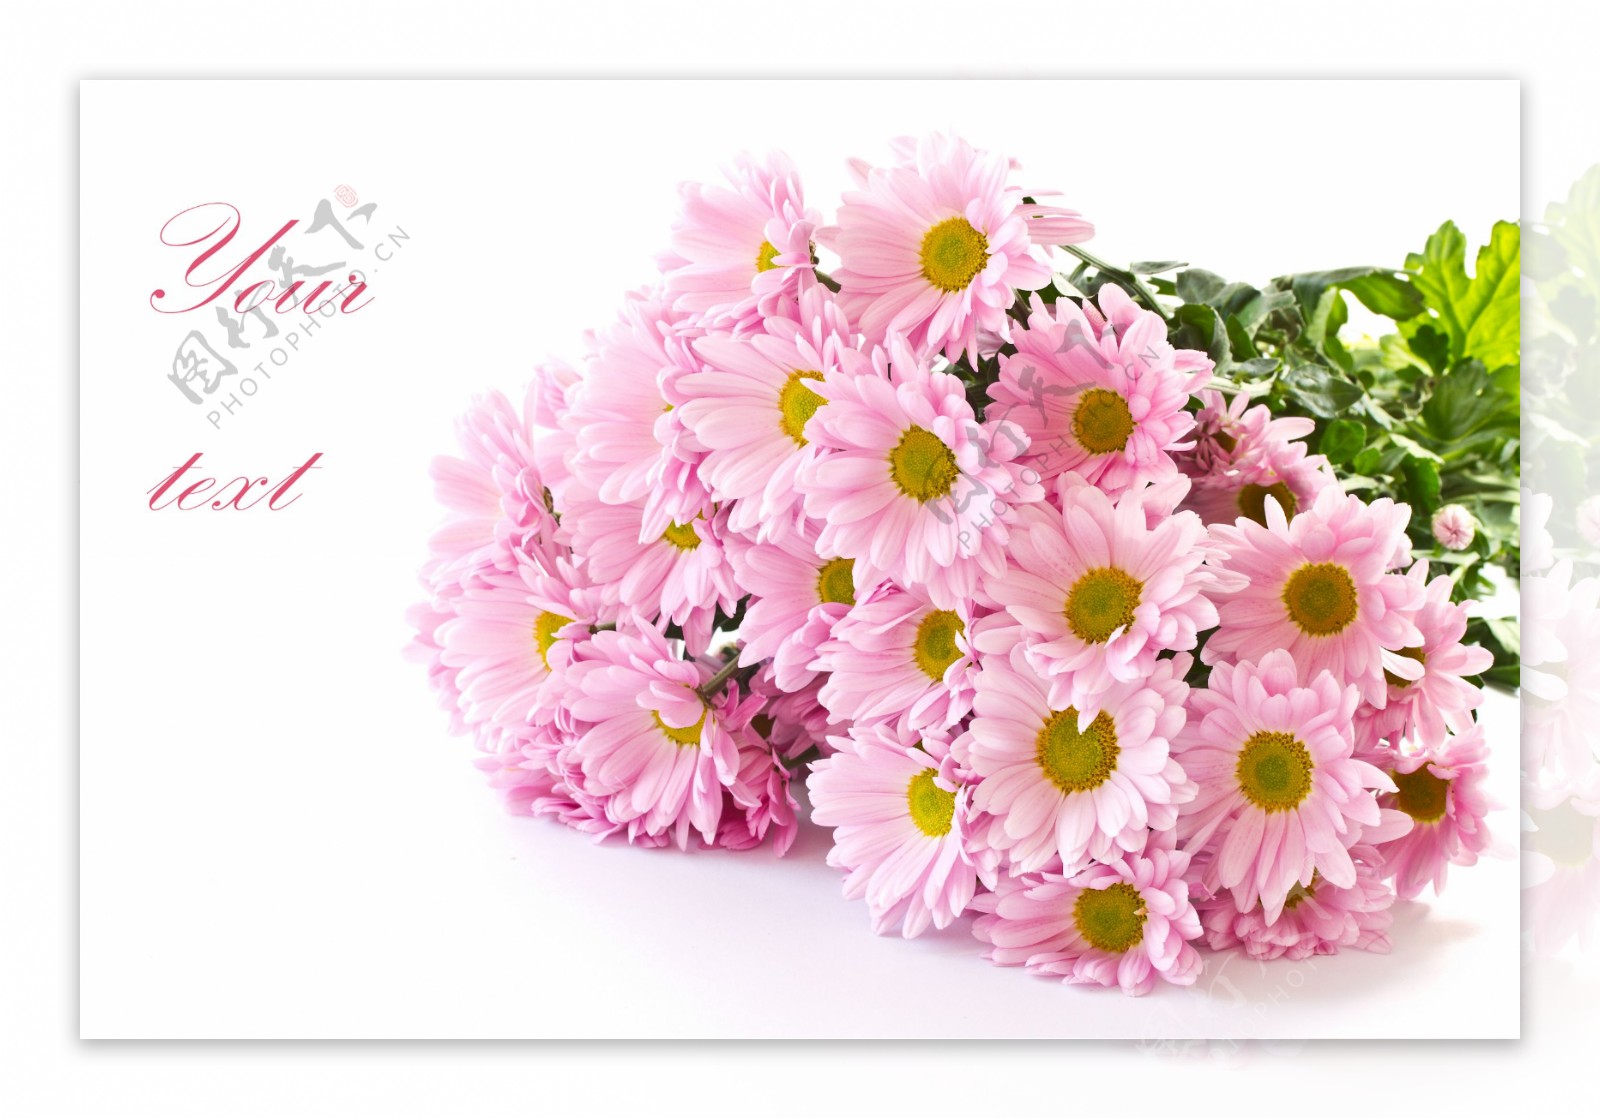 美丽的粉色菊花图片